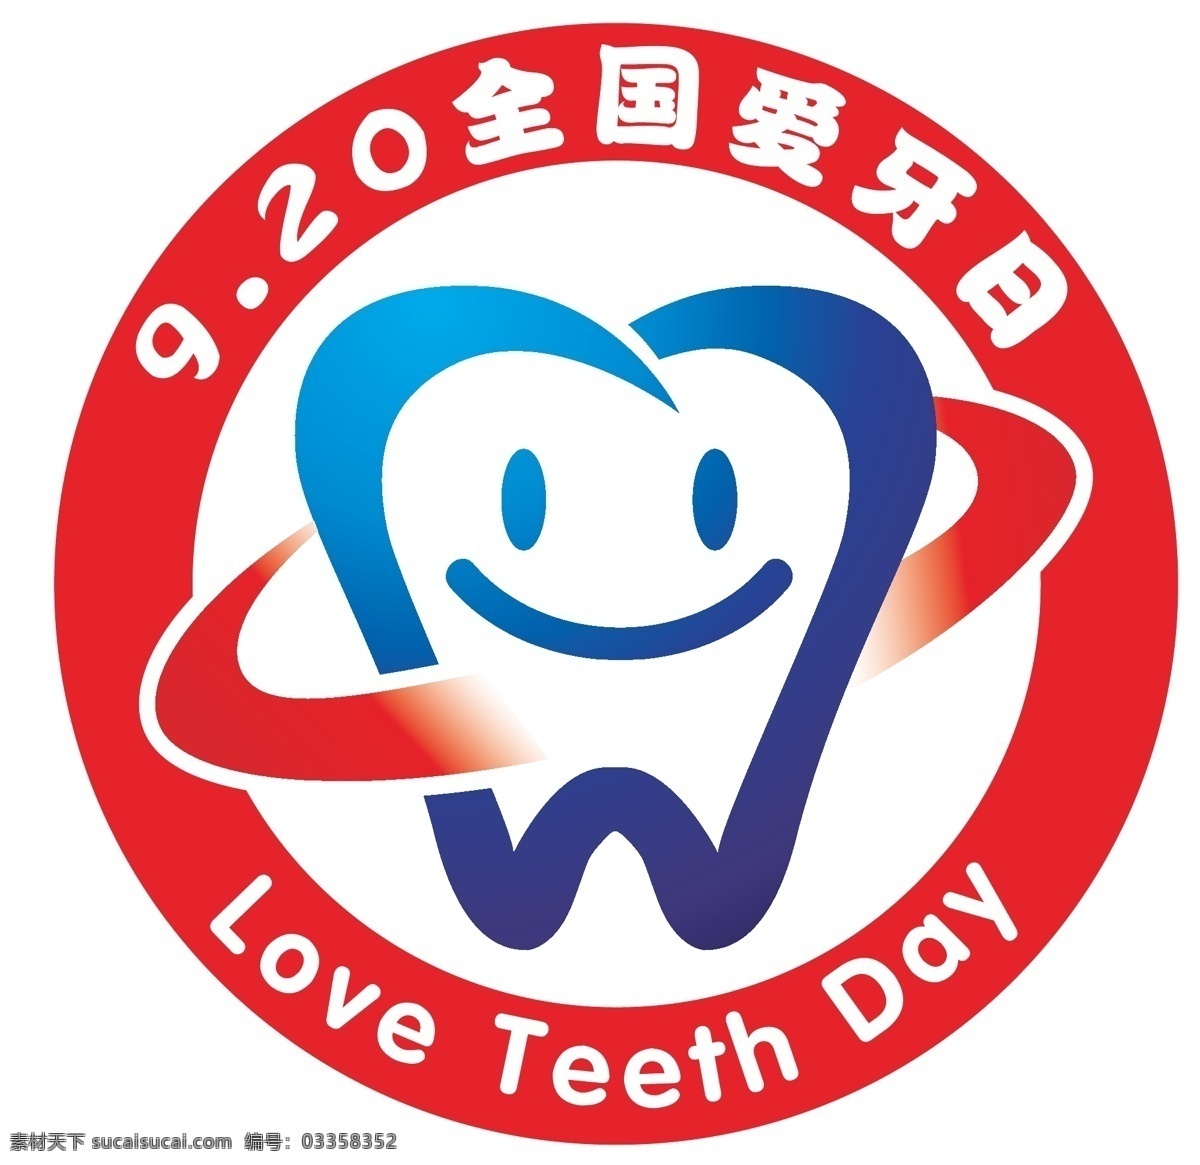 爱牙日 logo 保护口腔 牙齿 920 预防 卫生 疾控